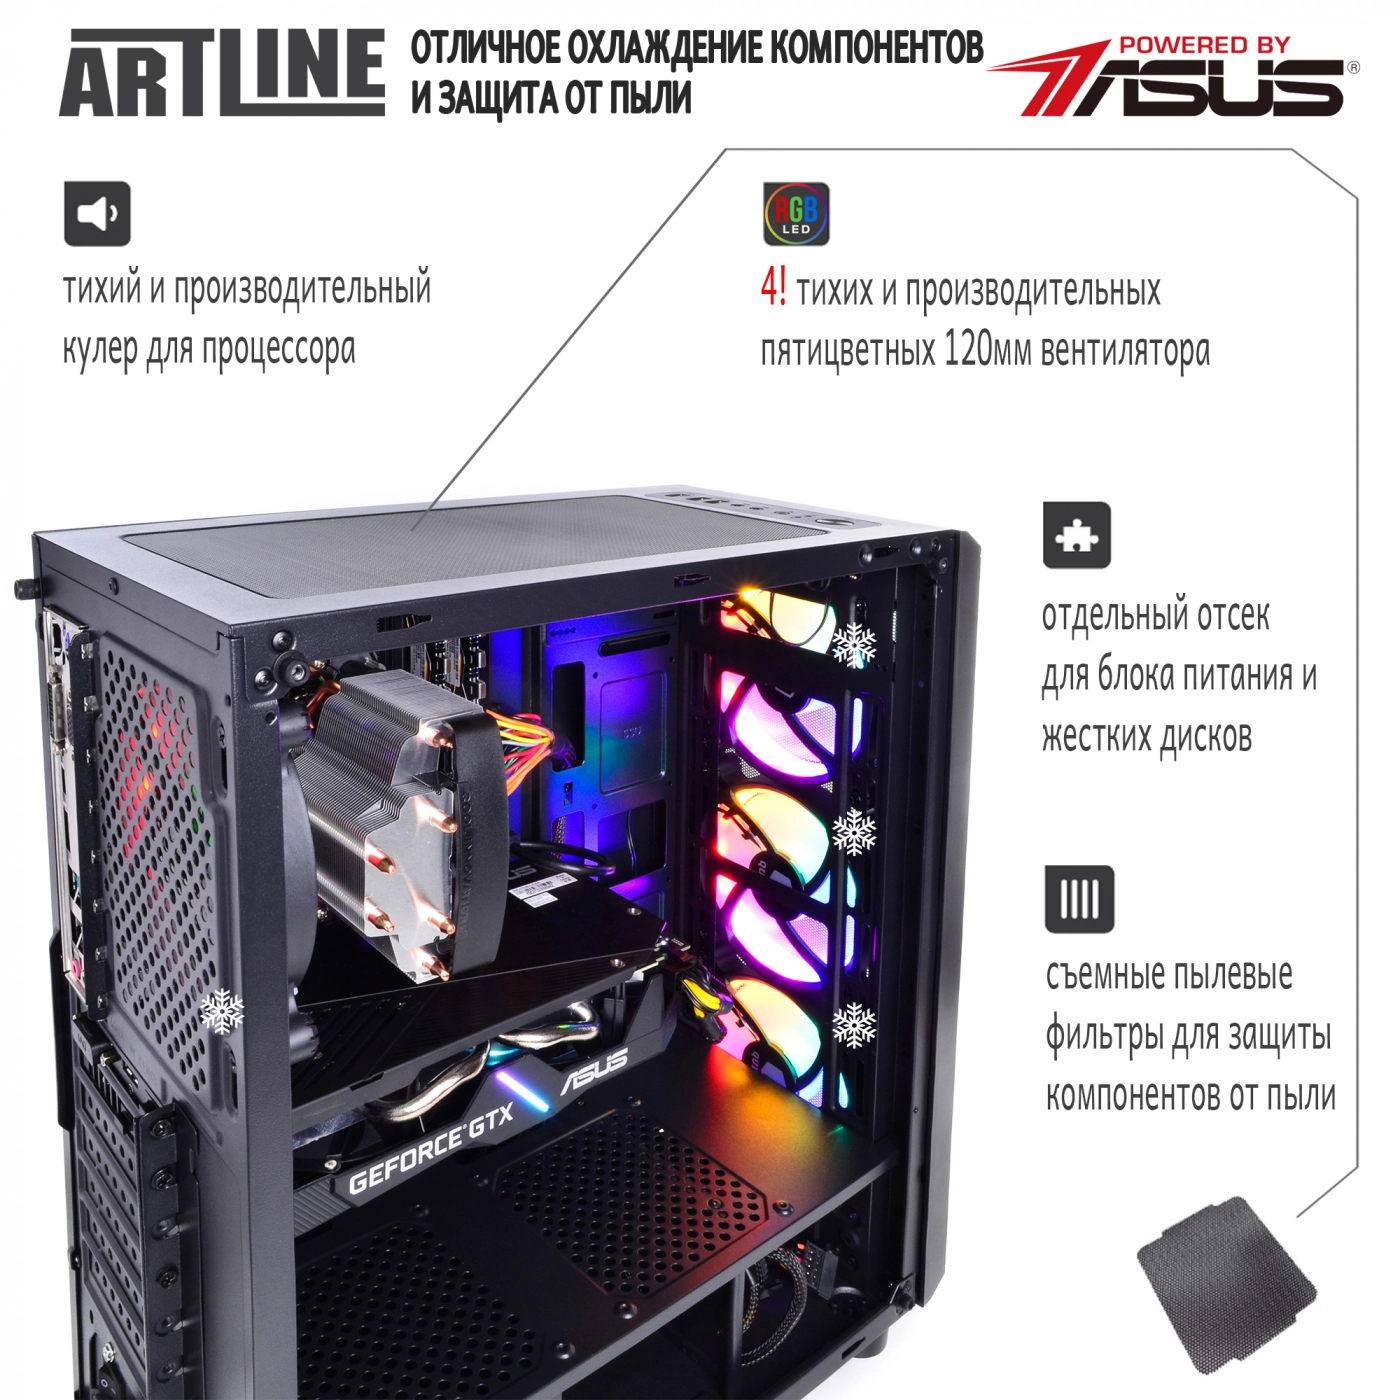 Купить Компьютер ARTLINE Gaming X35v33 - фото 4